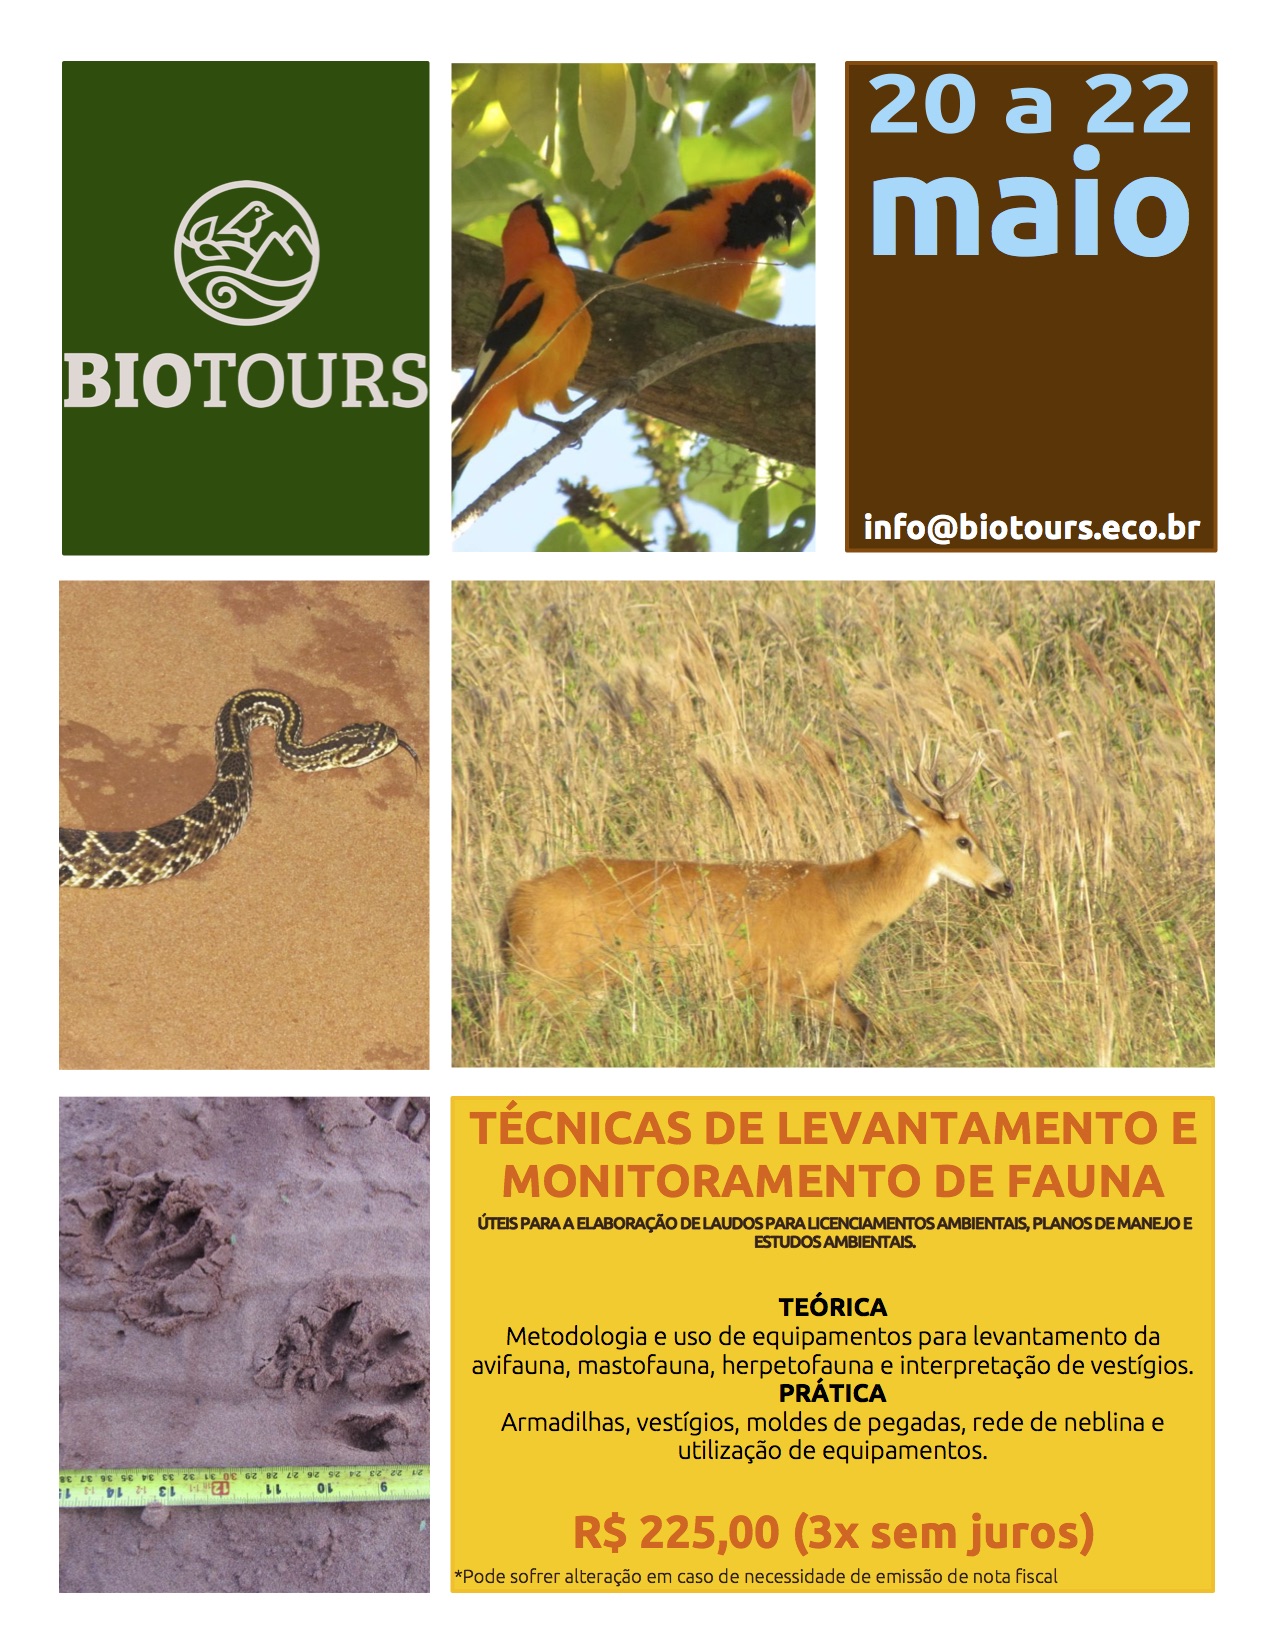 curso biotours monitoramento fauna 20 22maio2016